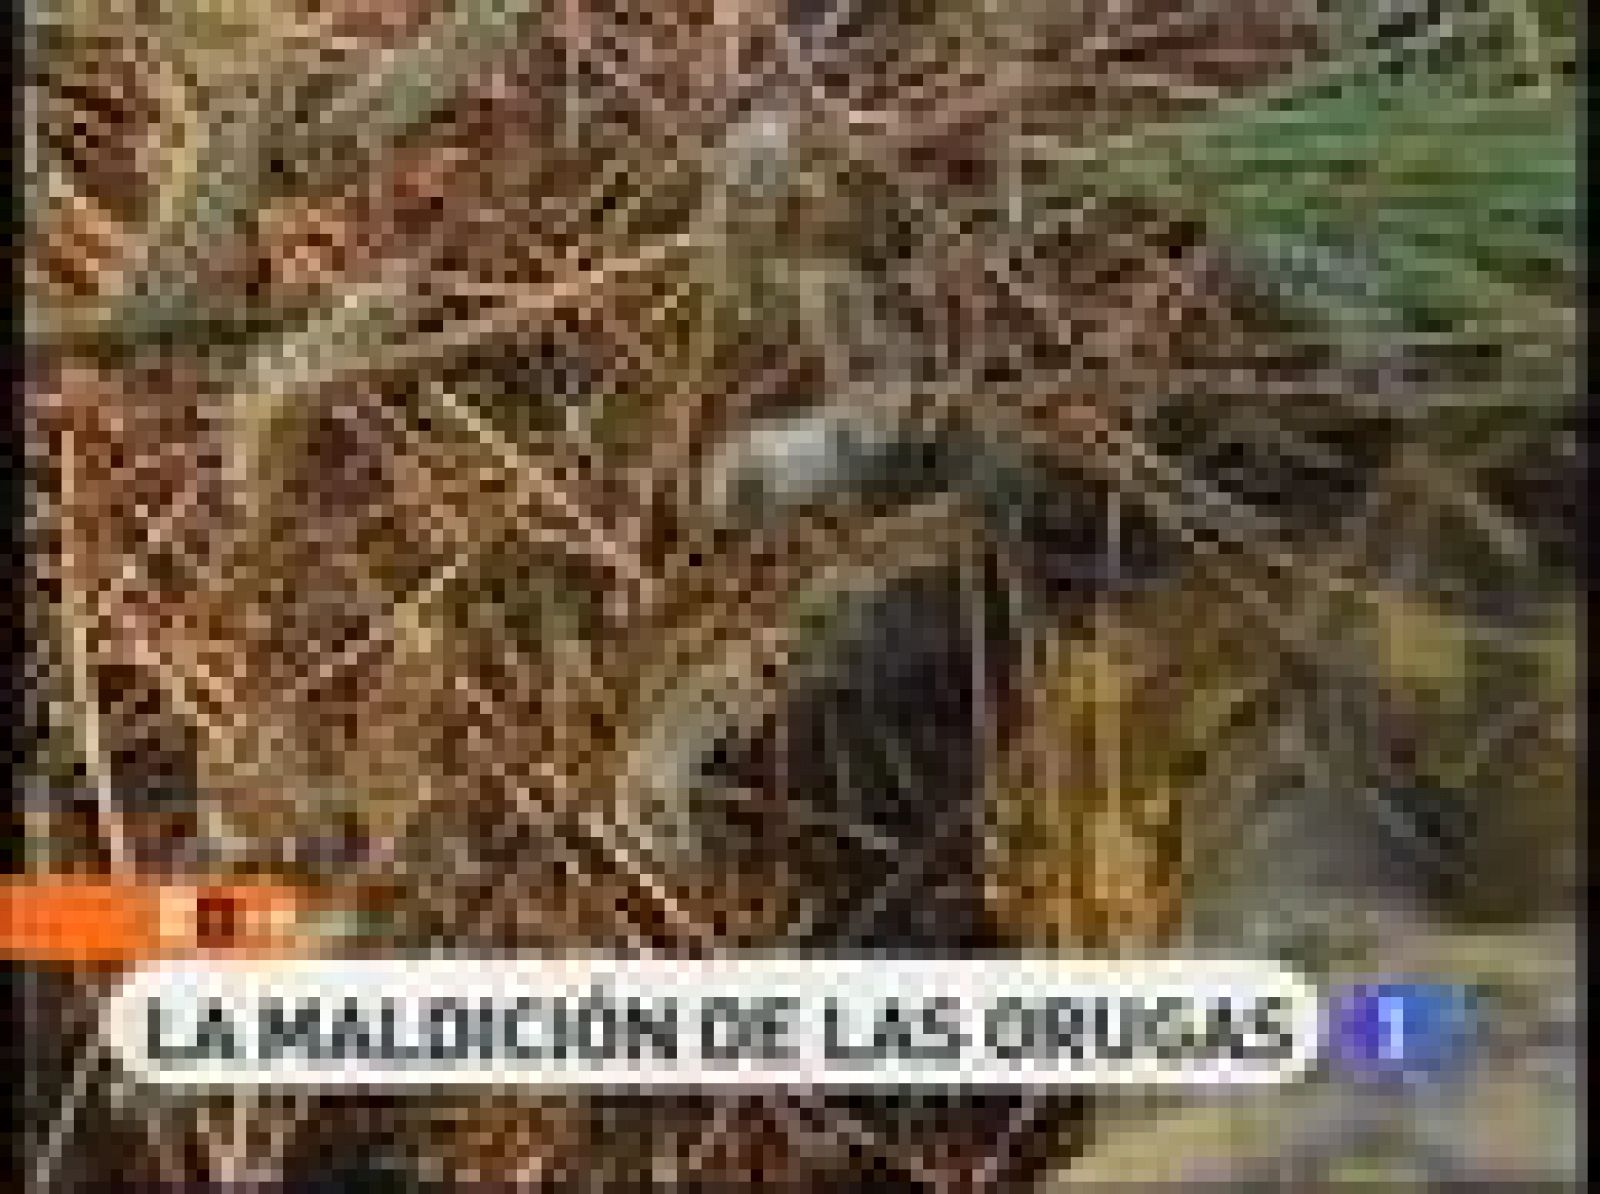 Esta temporada, la recogida de piña en Pedrajas de San Esteban (Valladolid), está siendo complicada. Los recolectores tienen que enfrentarse, cada día, a cuadrillas organizadas que les roban la cosecha, y a una plaga de orugas que ha invadido la comarca. 